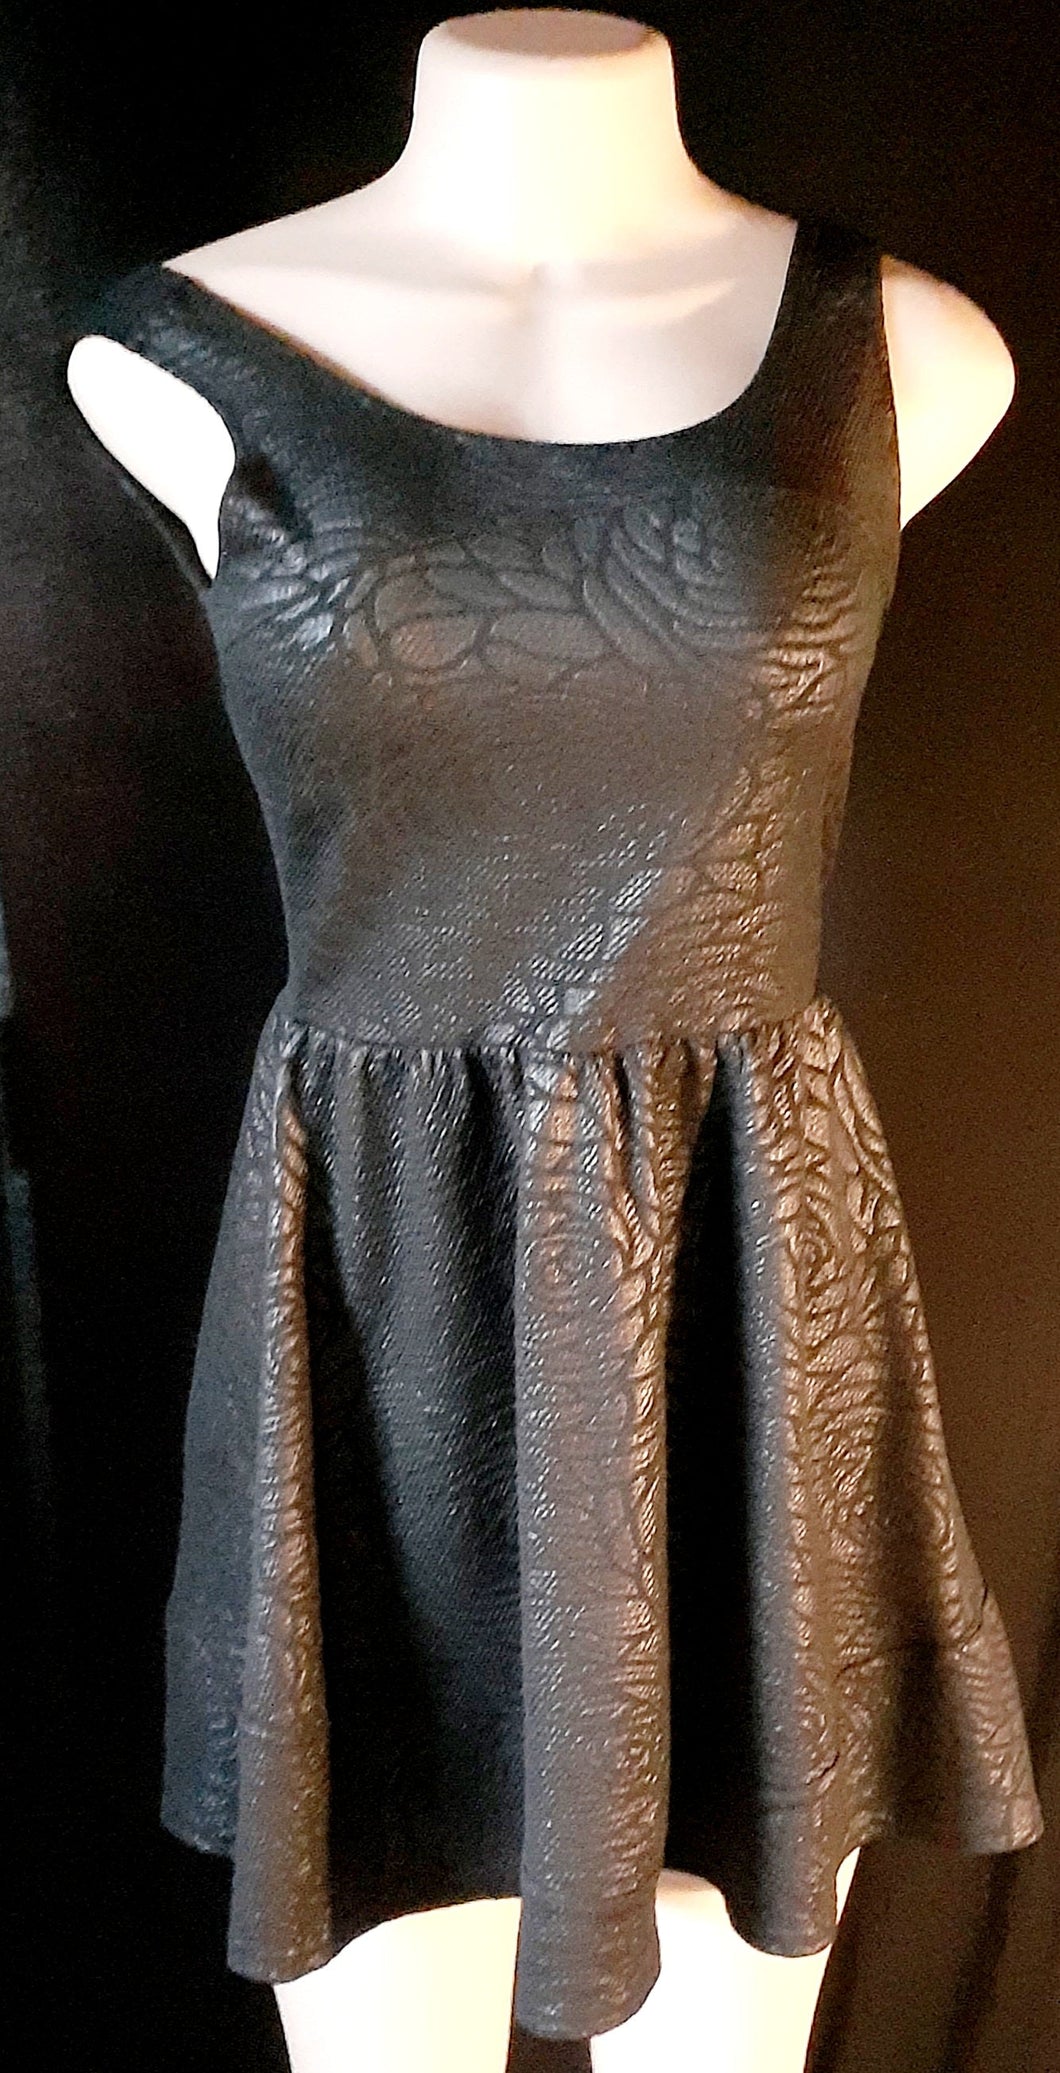 Vintage Saks Fifth Avenue Floral Black Skater Dress Size Medium Kargo Fresh